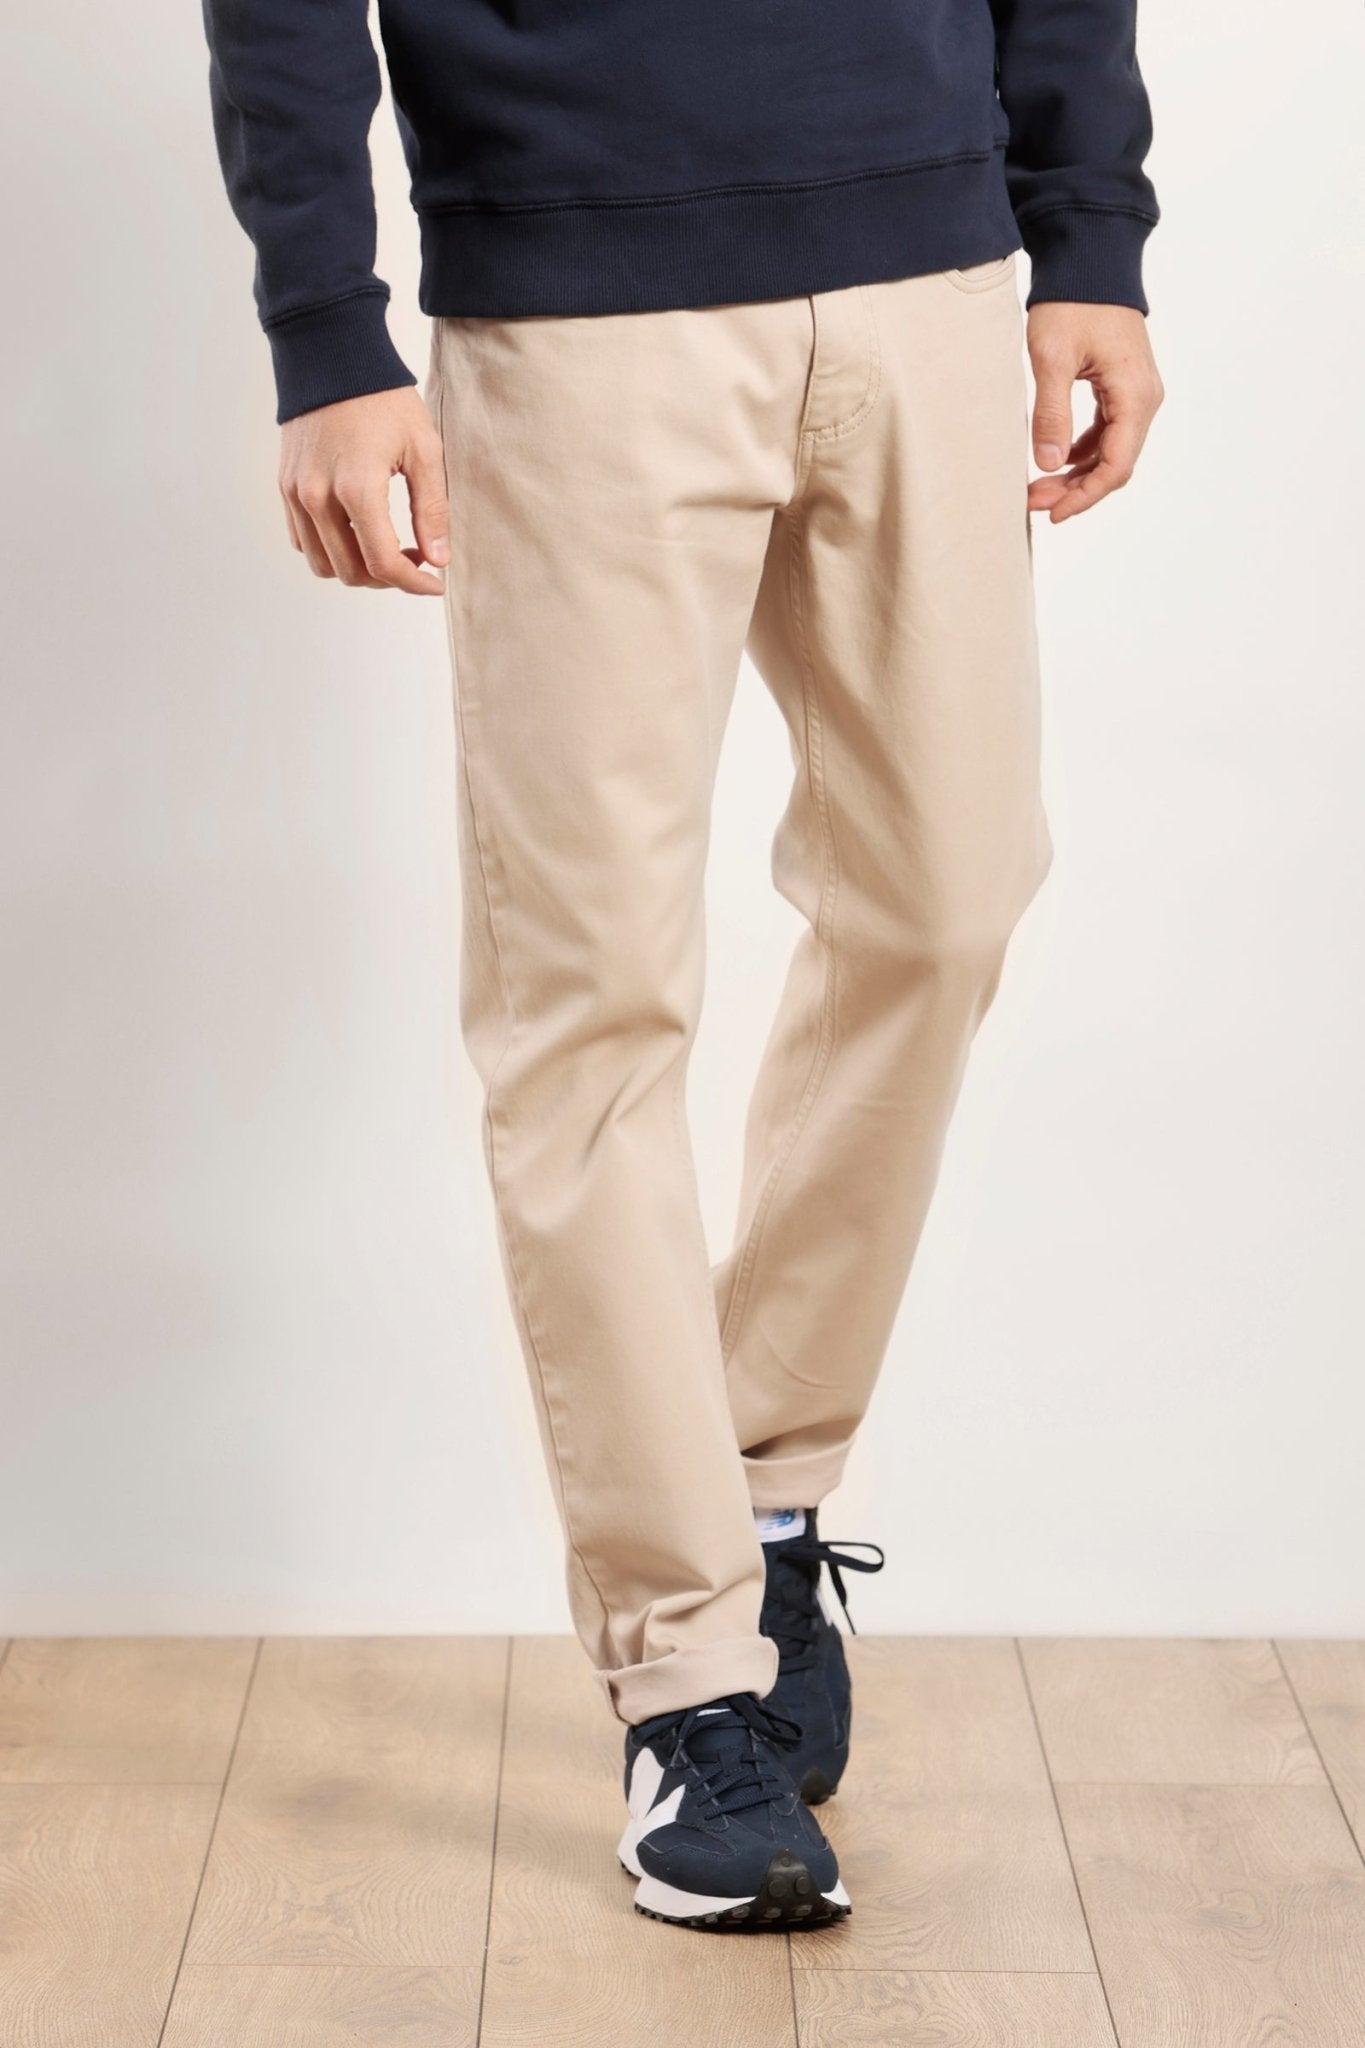 Pantalon 5 poches en drill de coton bio